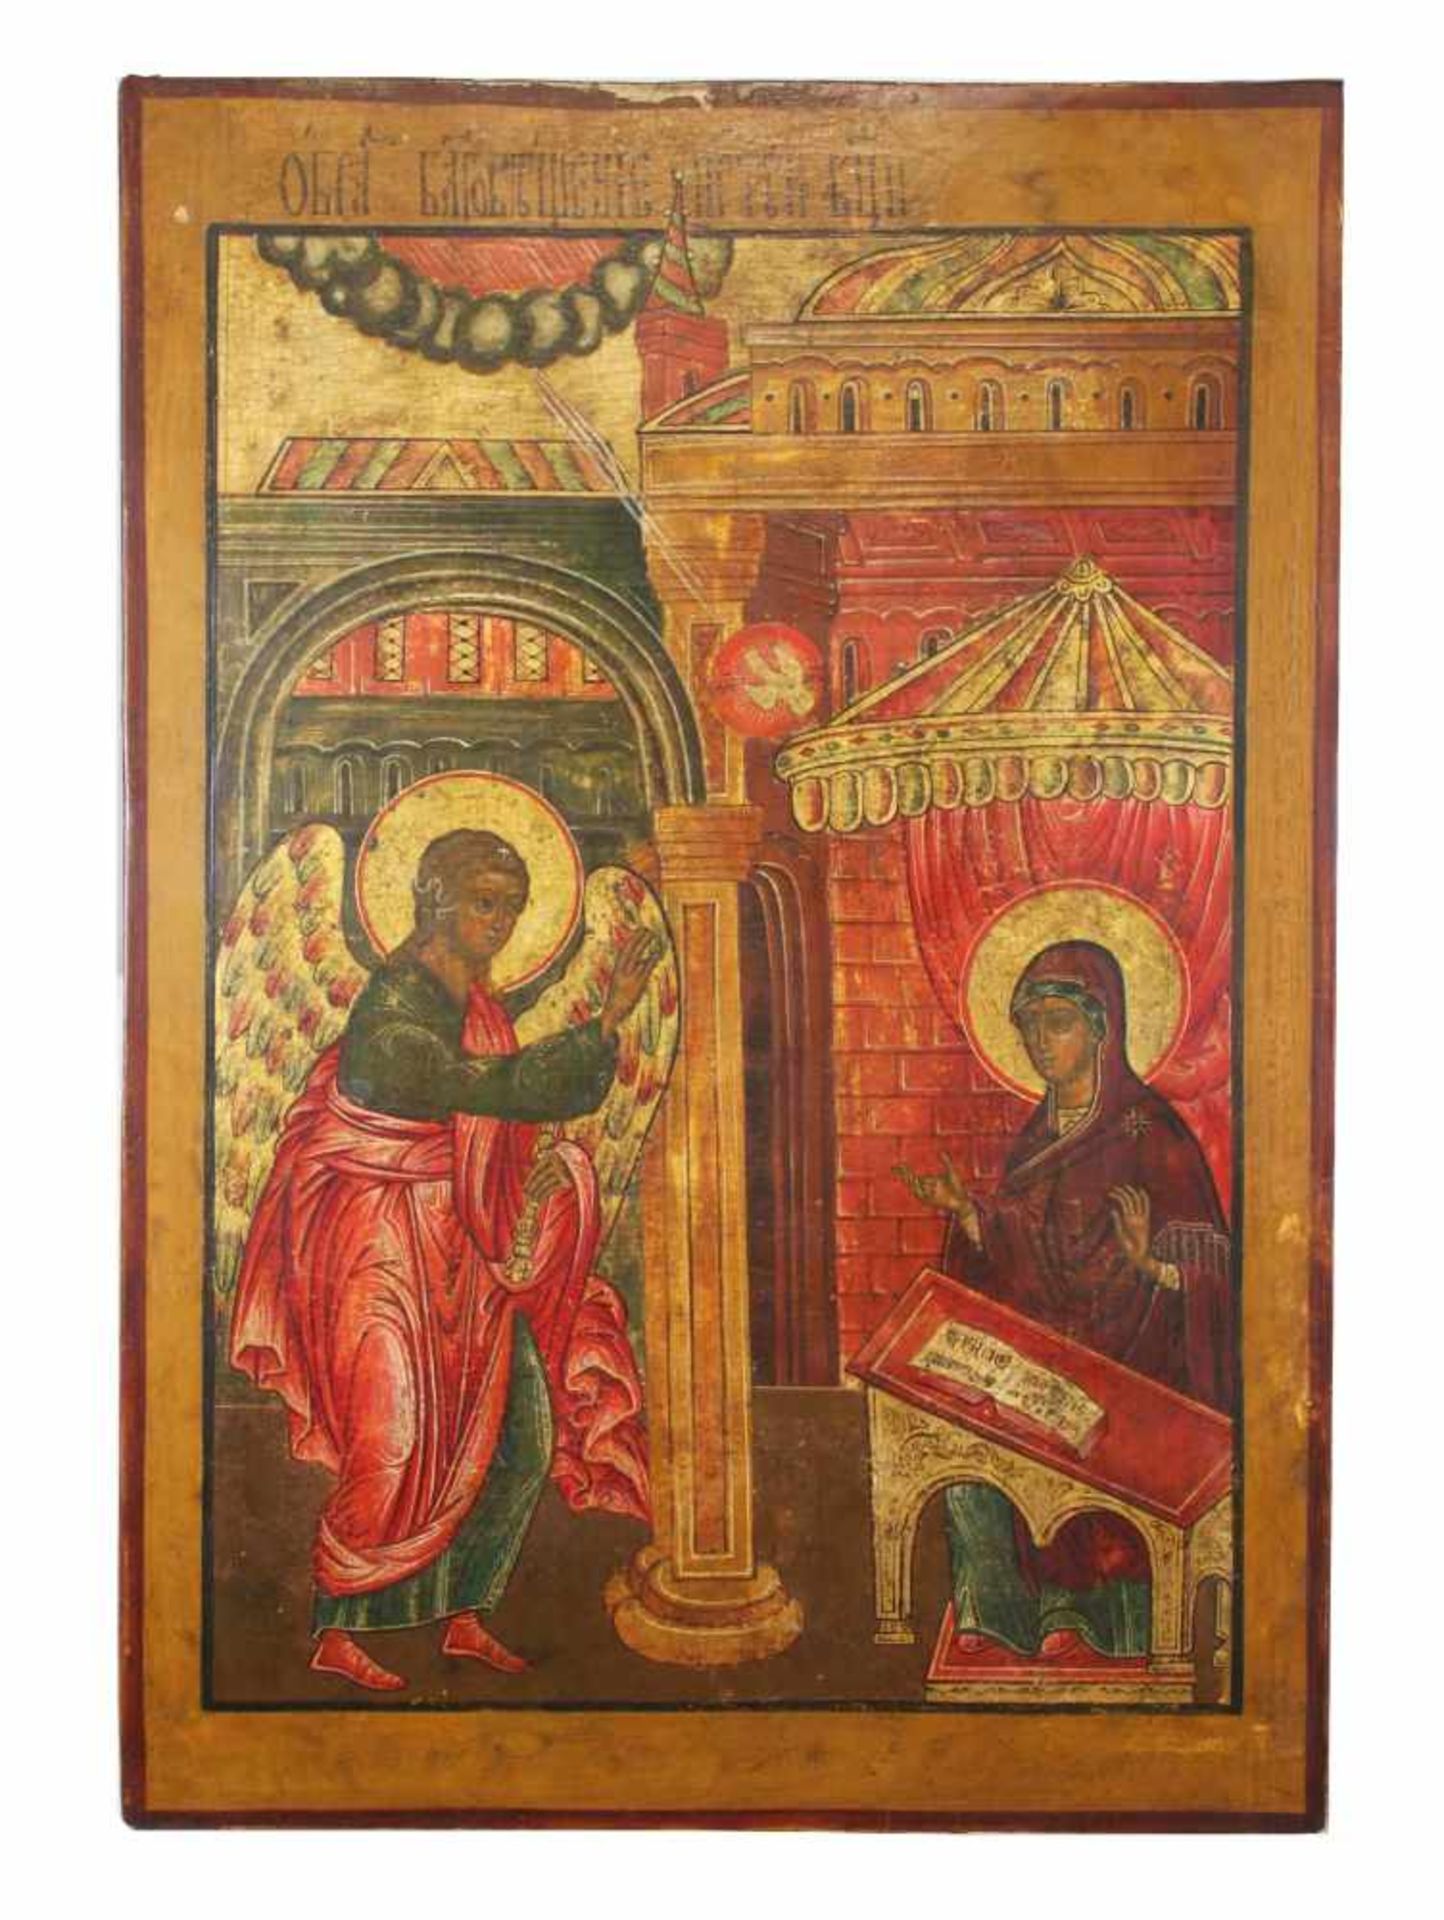 Verkündigung / Blagovesch, Große Ikone, Russland, Maria erscheint der Erzengel Gabriel, mit